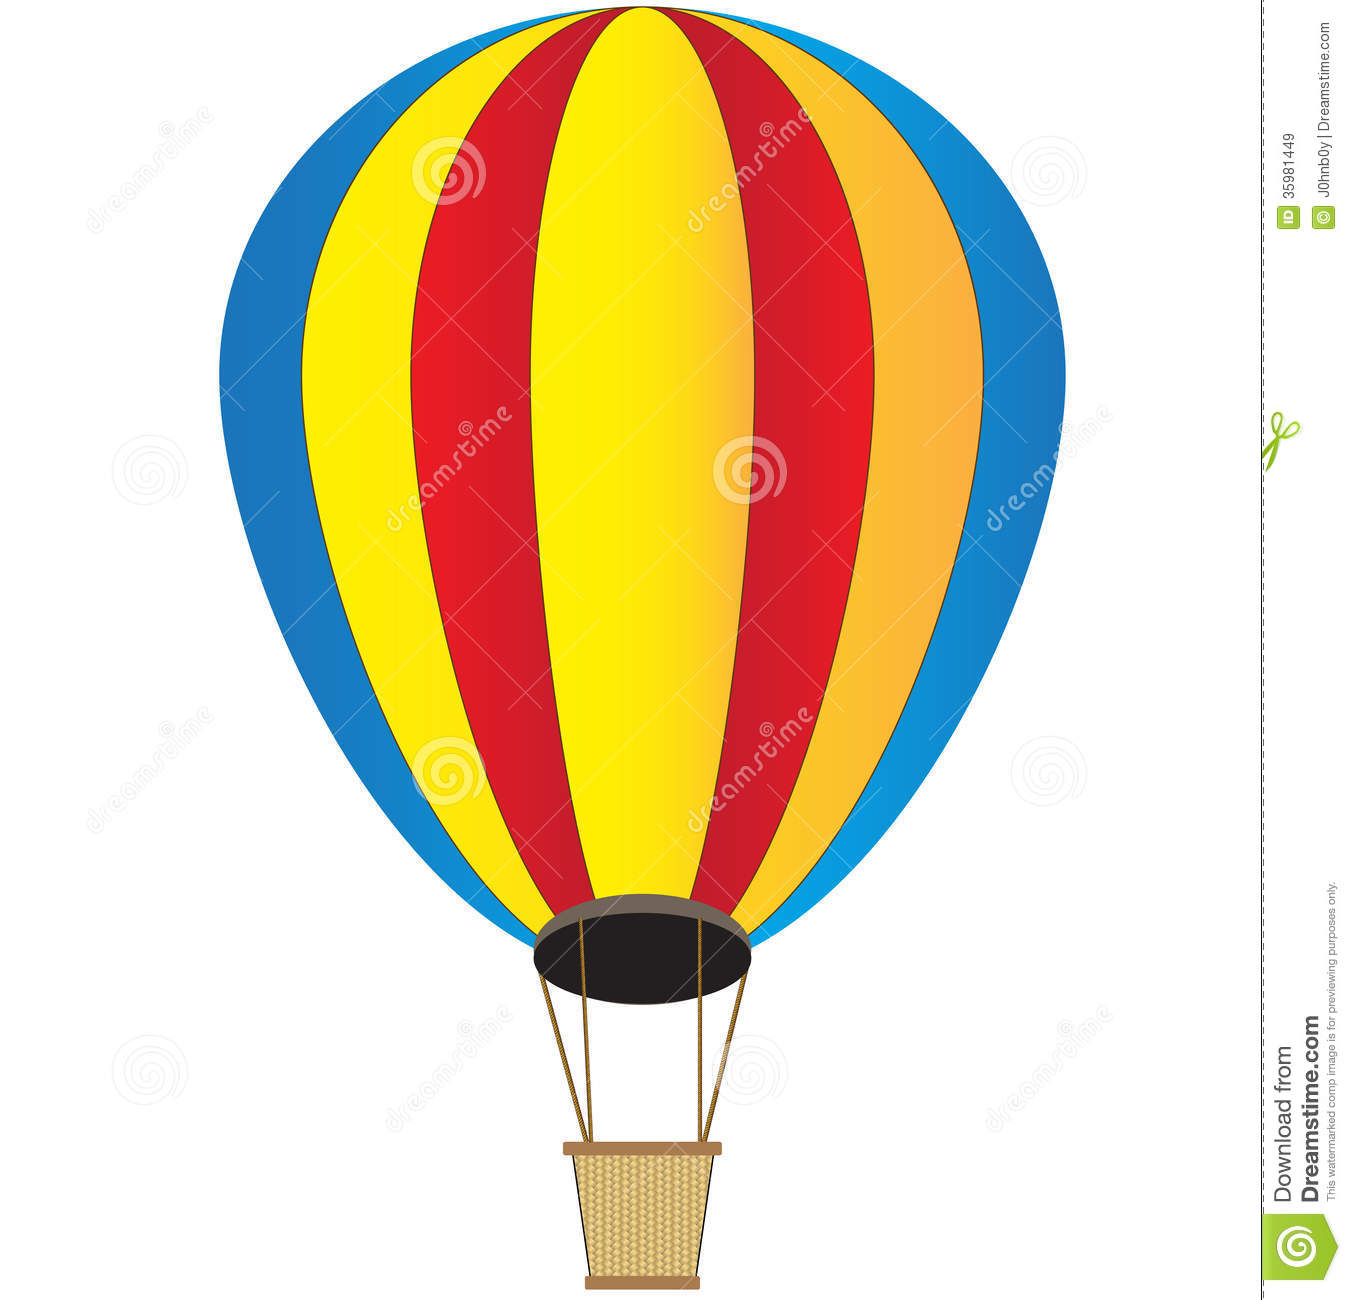 hot air balloon basket clipar - Clipart Hot Air Balloon